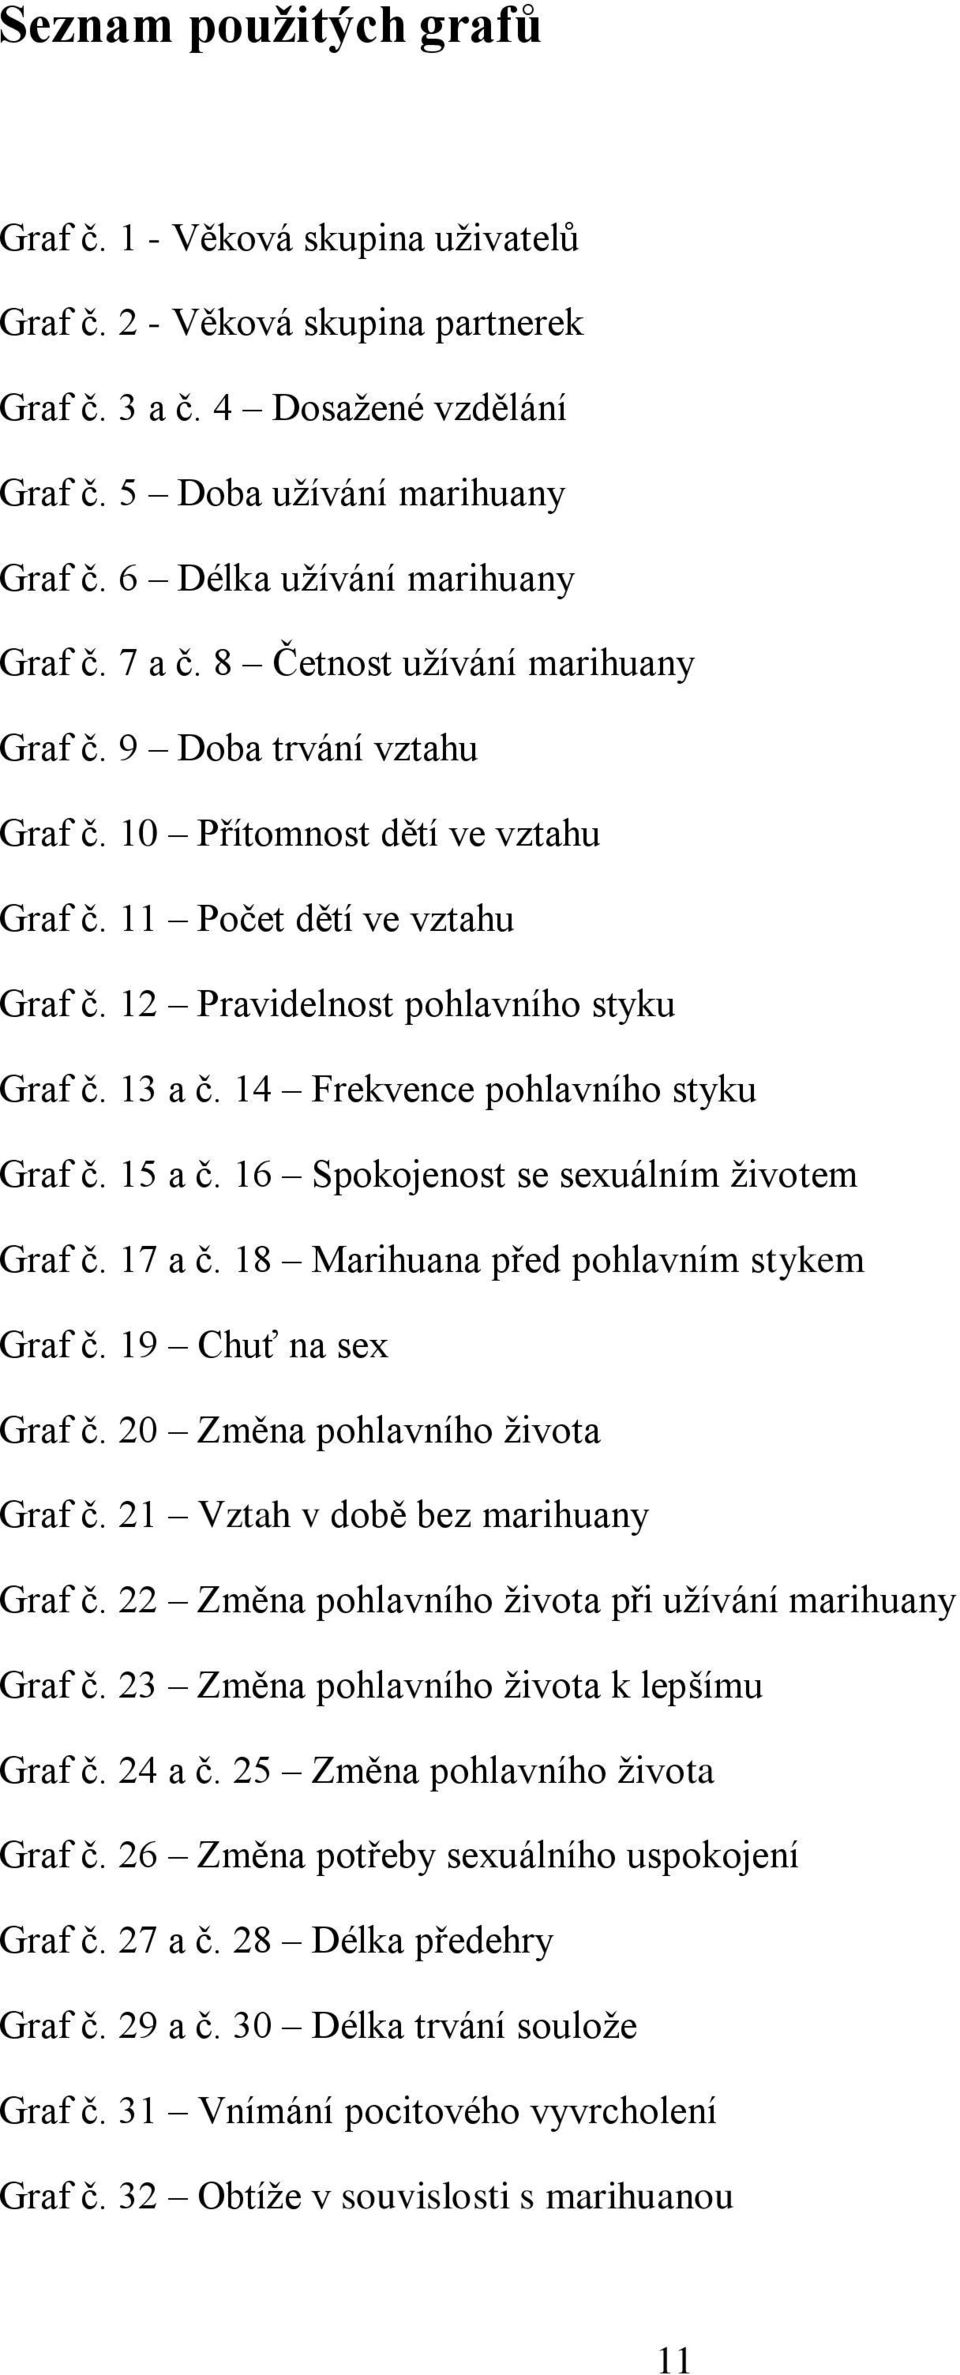 12 Pravidelnost pohlavního styku Graf č. 13 a č. 14 Frekvence pohlavního styku Graf č. 15 a č. 16 Spokojenost se sexuálním životem Graf č. 17 a č. 18 Marihuana před pohlavním stykem Graf č.